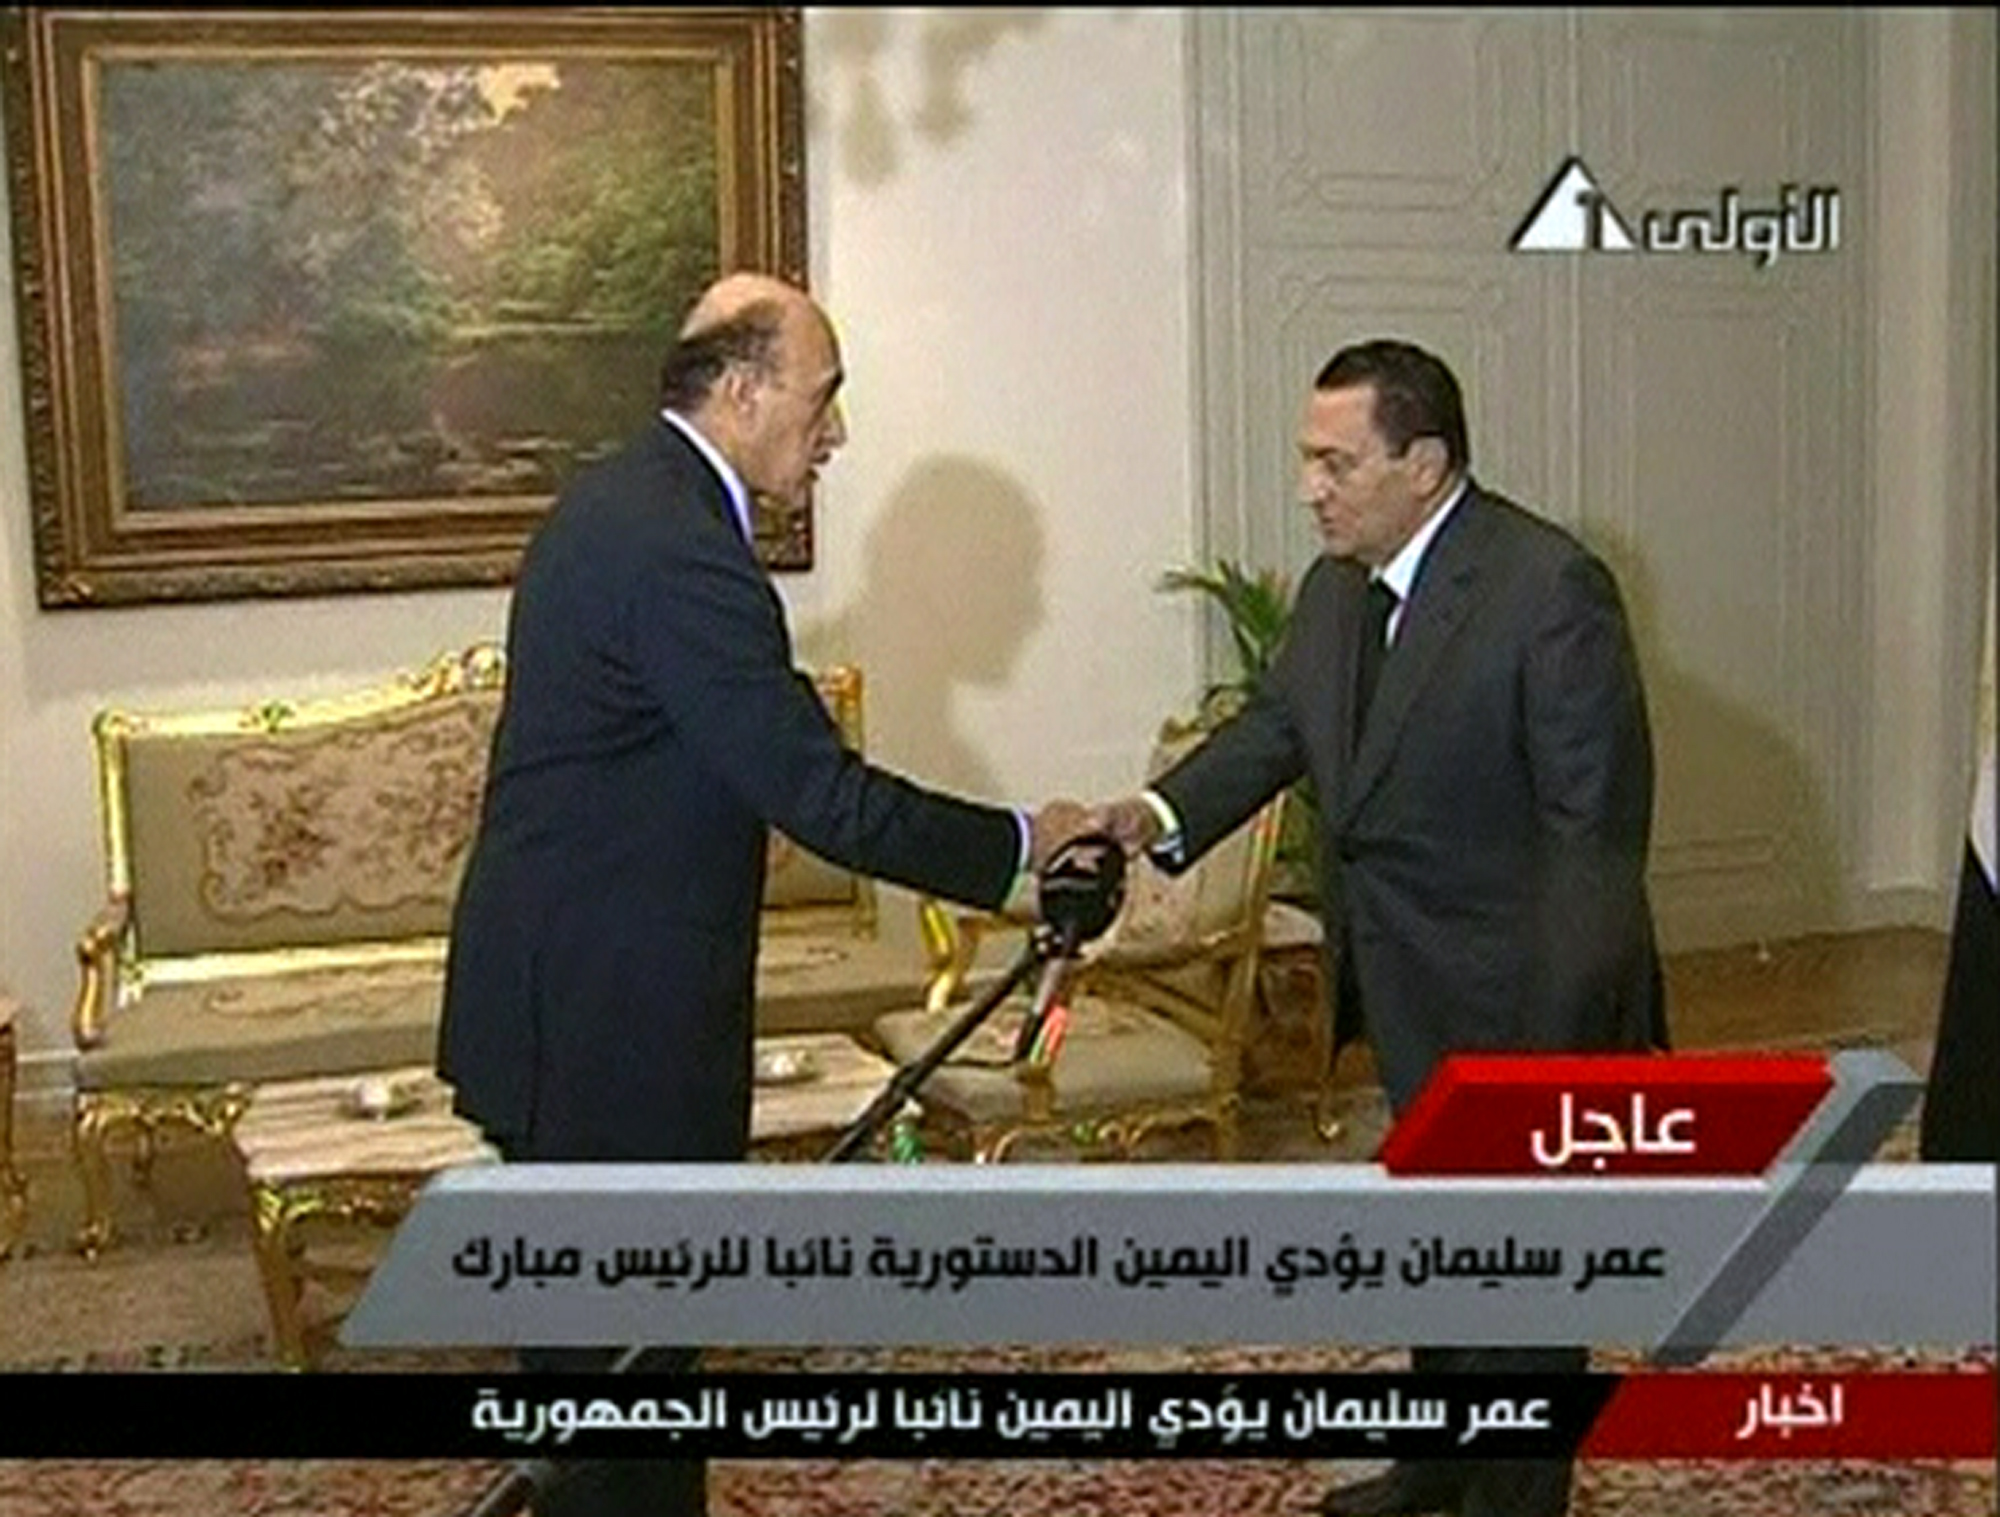 Mubarak har utsett Omar Suleiman till vicepresident. Suleiman är sedan tidigare chef för Egyptens säkerhetstjänst.